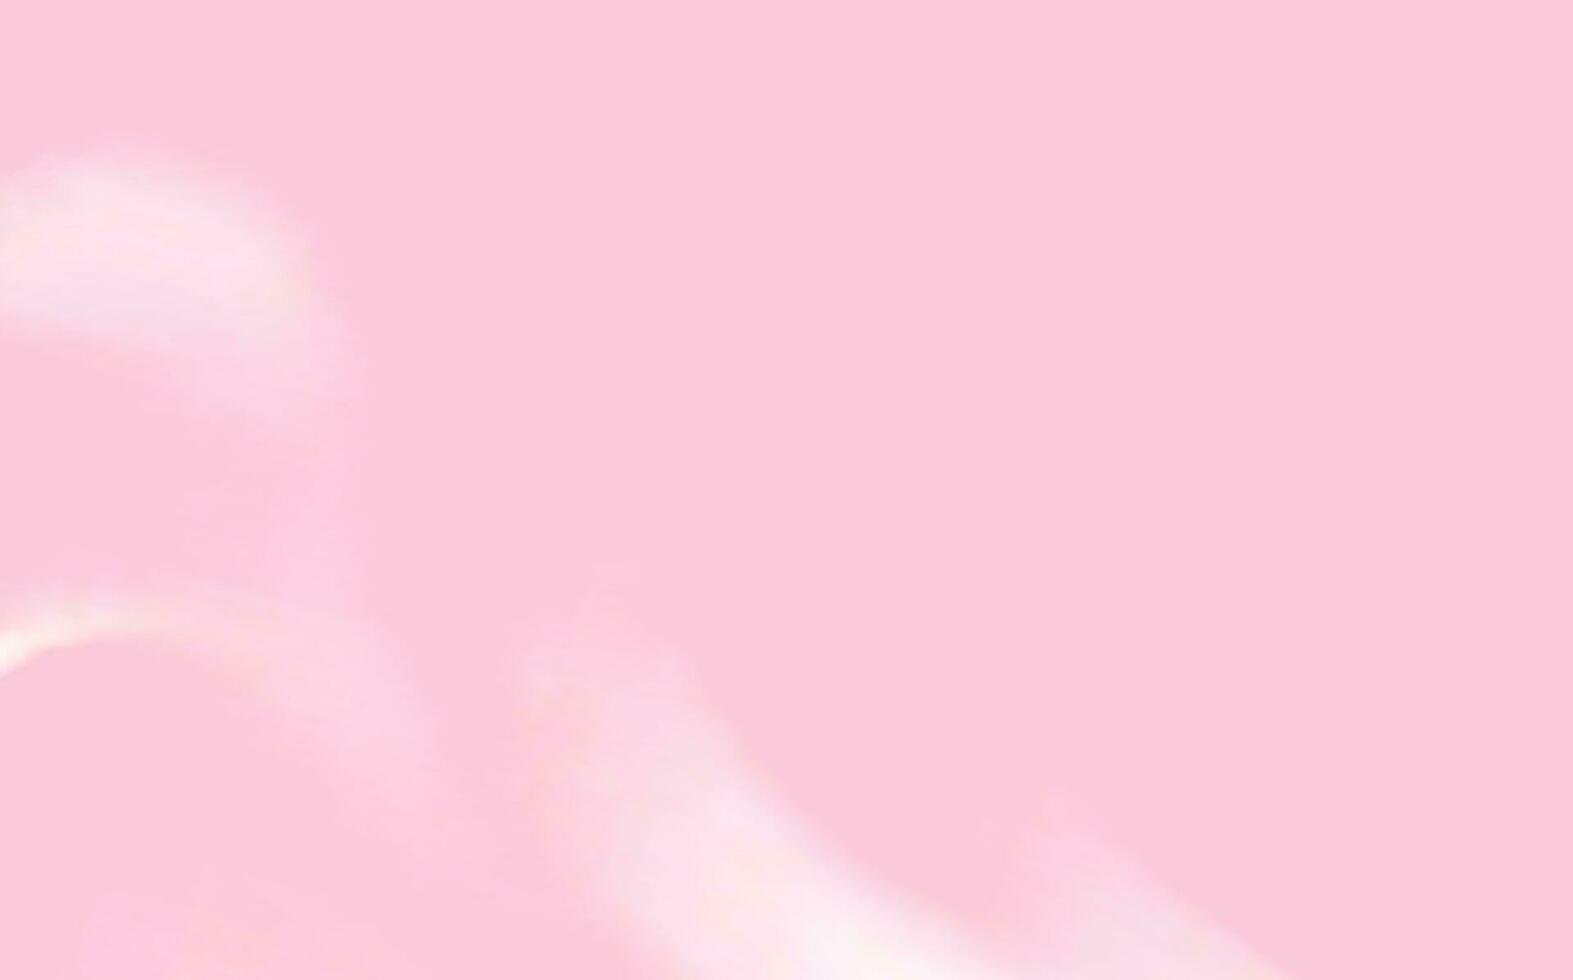 rosa diffusione struttura di crema, ghiaccio crema o glassatura. leggero sfondo di fragola dolce, gelatina o confetteria crema. vettore